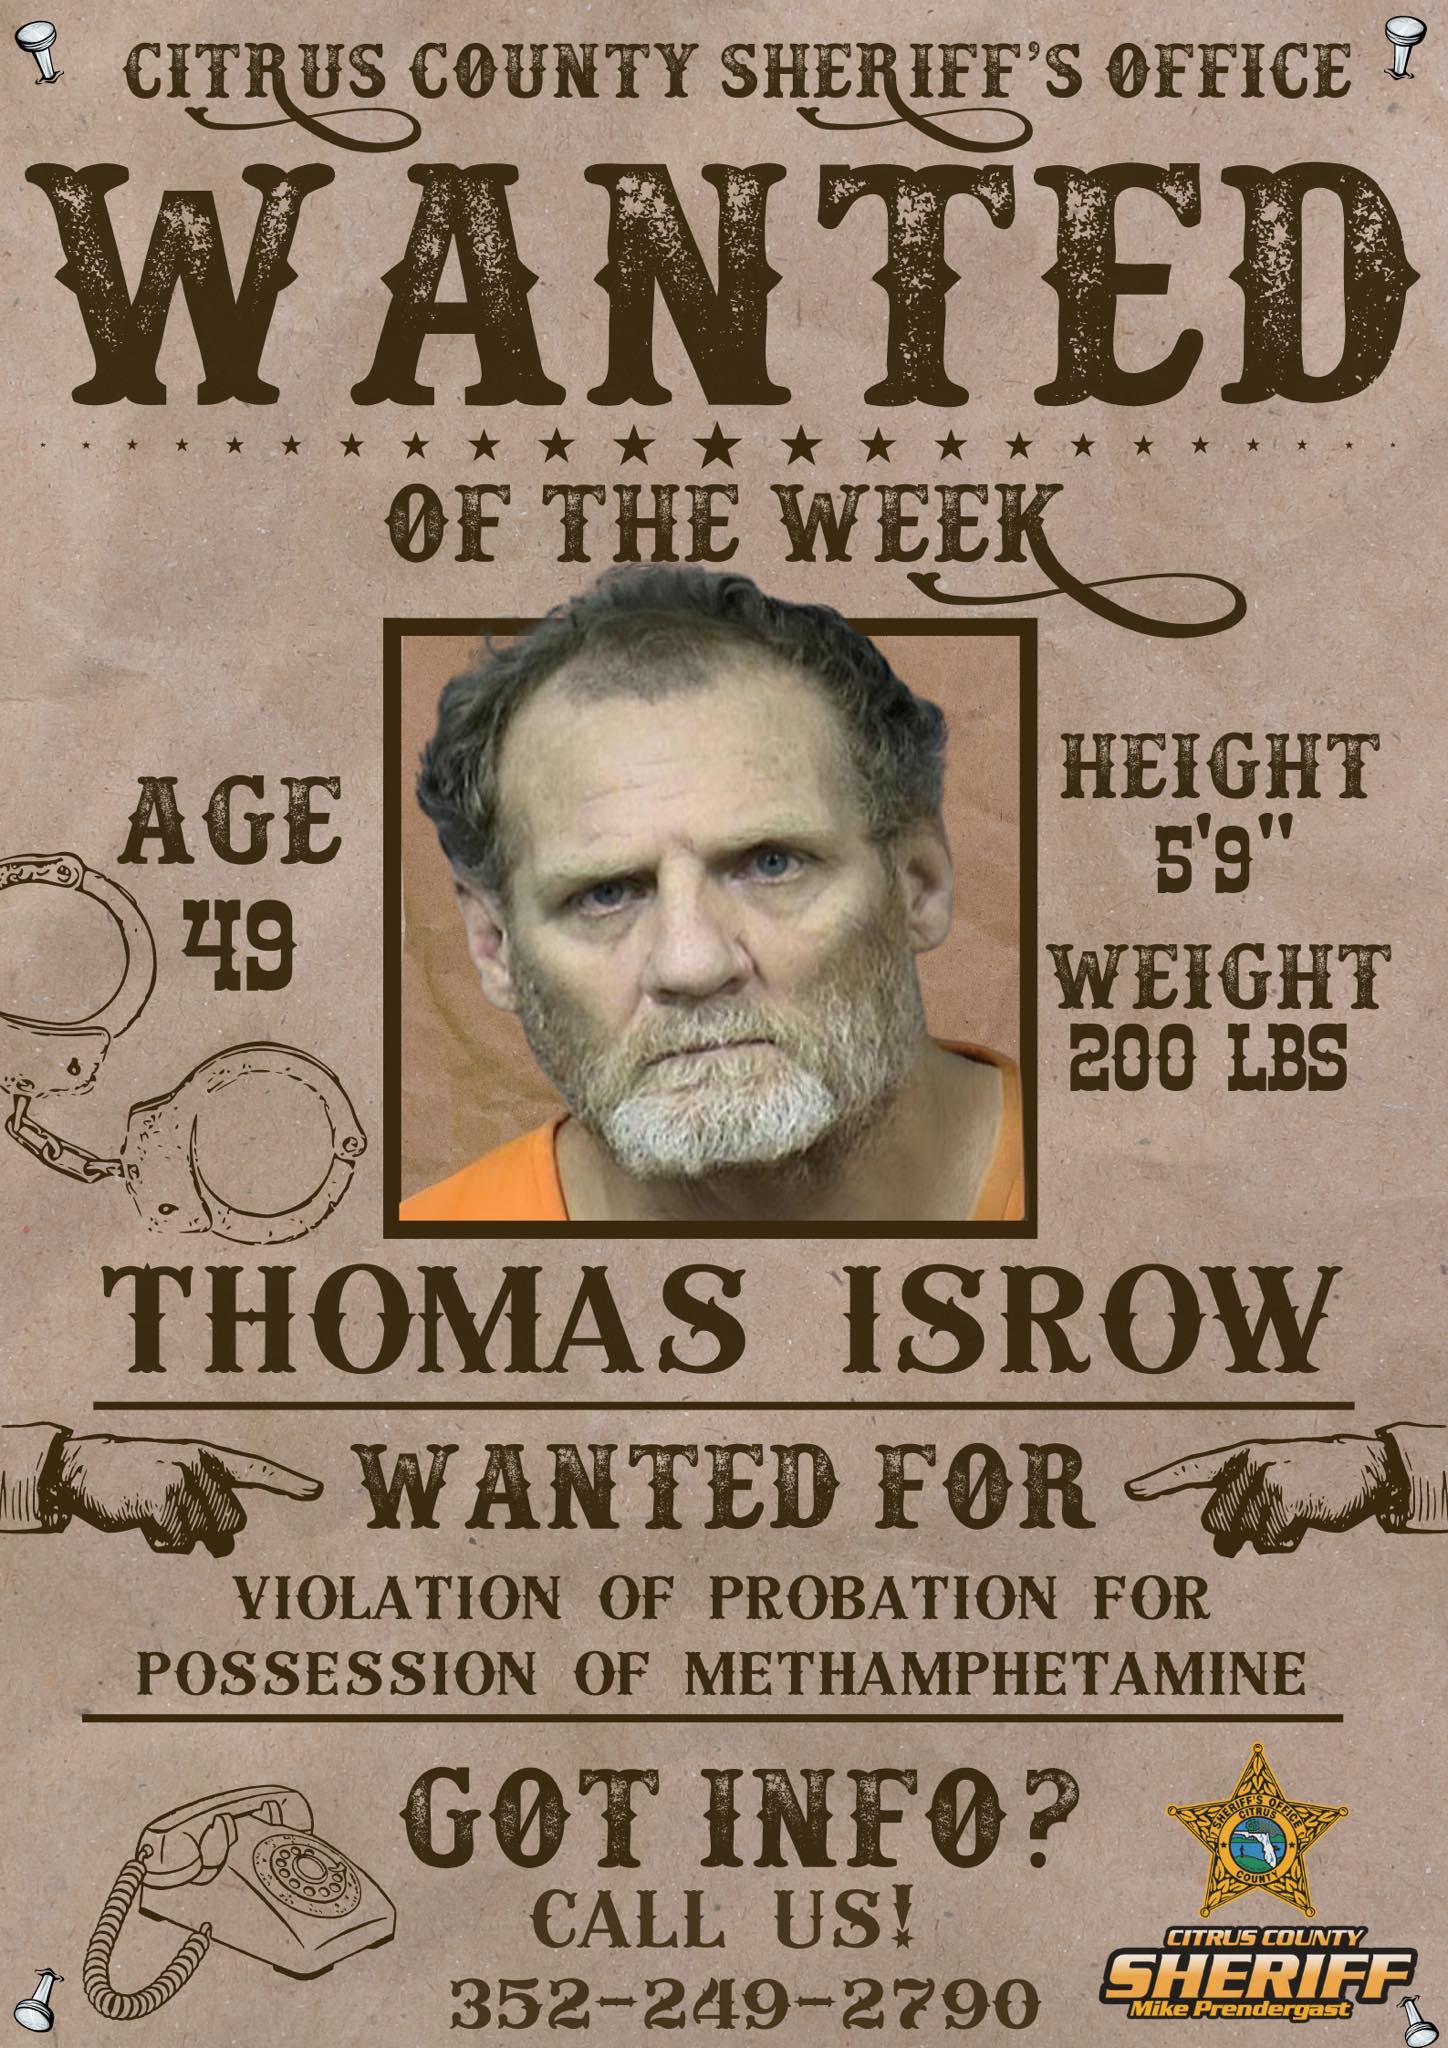 Thomas Isrow